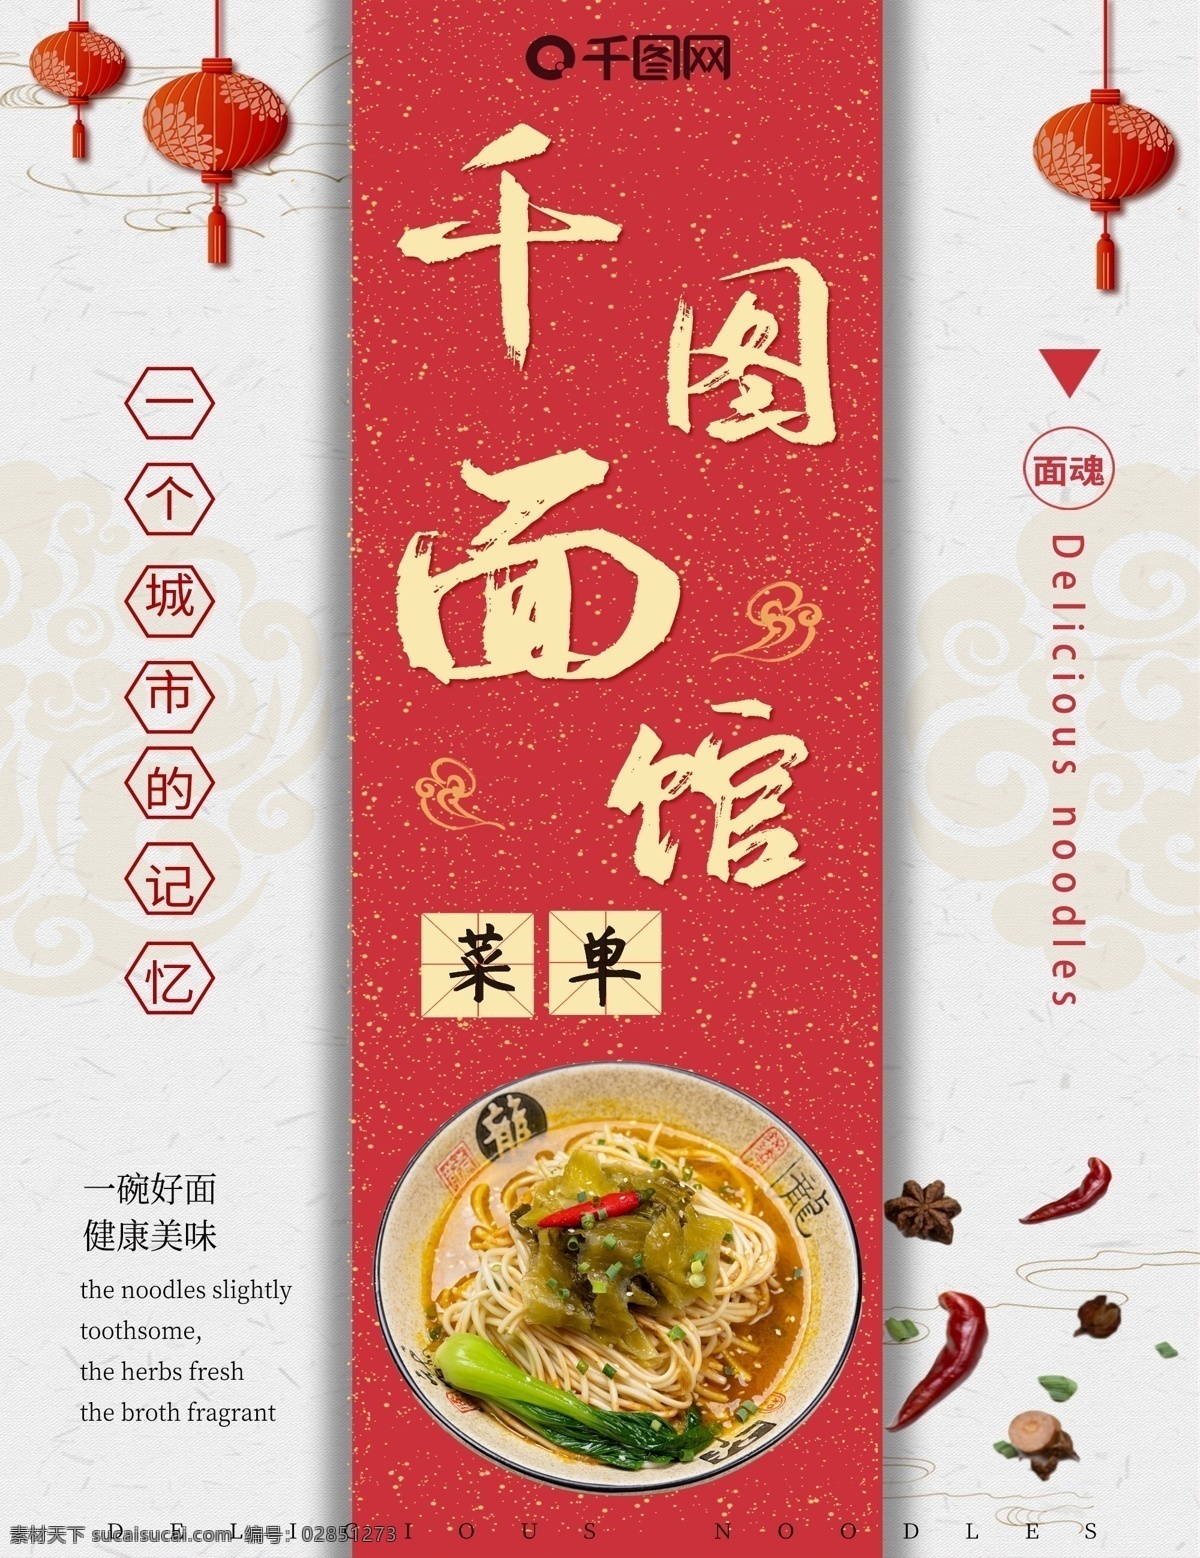 中国 风 红色 中式 高档 面馆 菜单 中国风 菜单设计 面馆菜单 菜谱设计